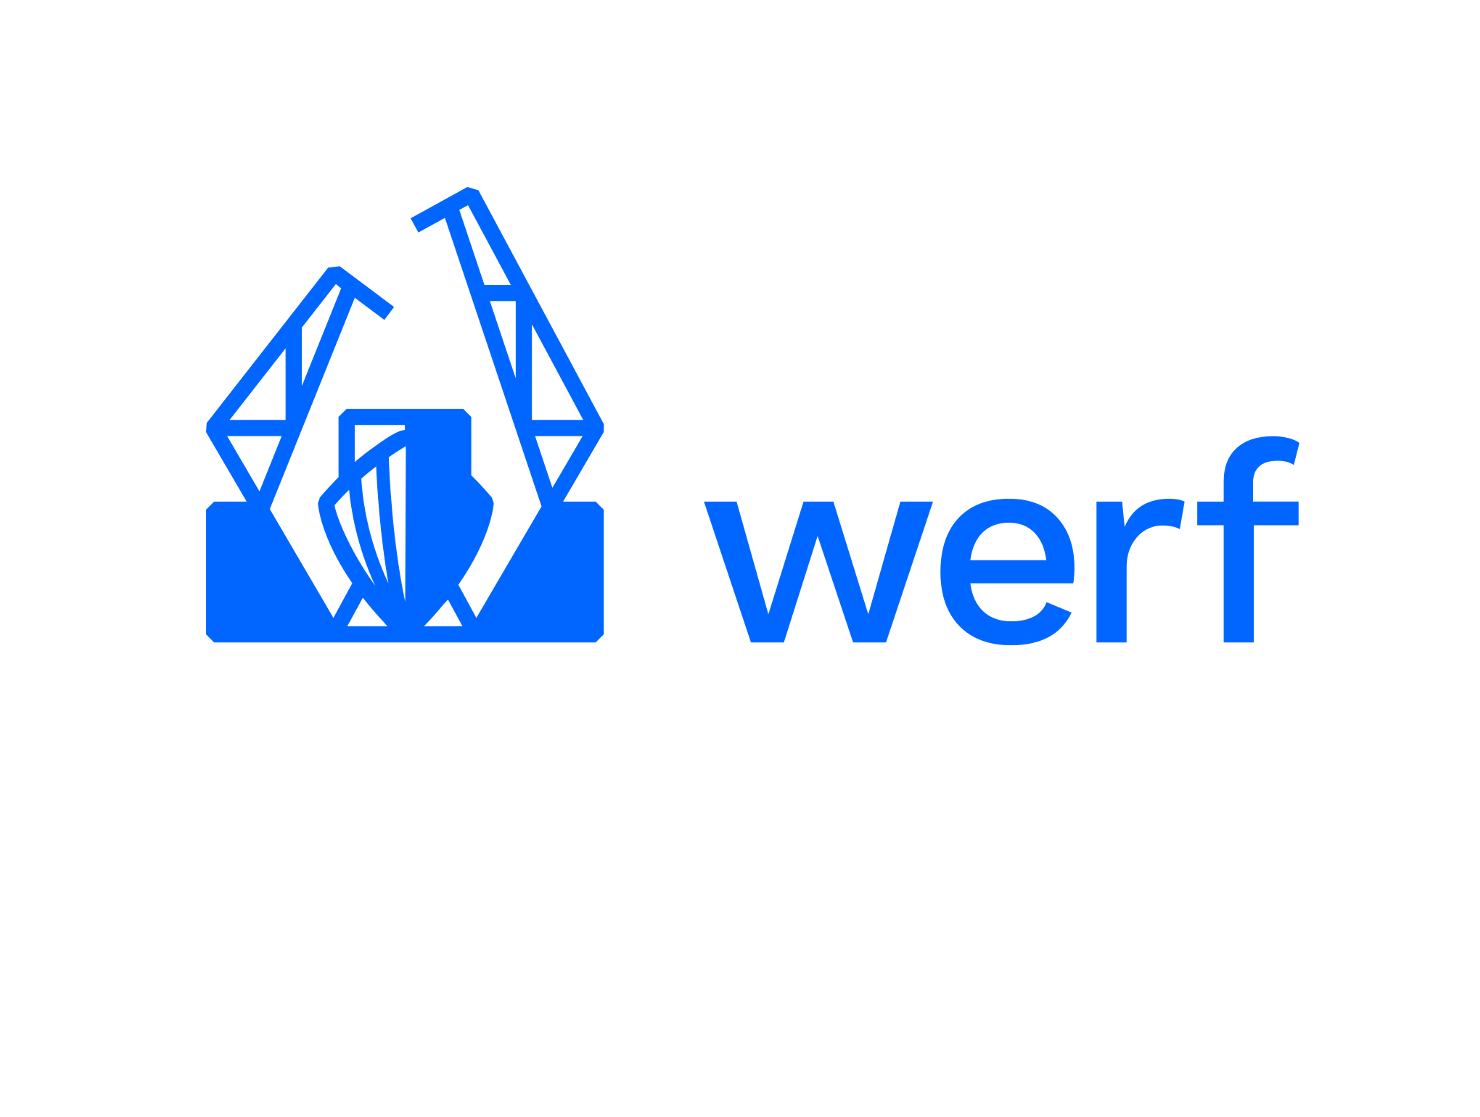 Встреча core-команды разработчиков werf с сообществом. Обсудим новый движок деплоя, проблемы Helm и ответим на все вопросы